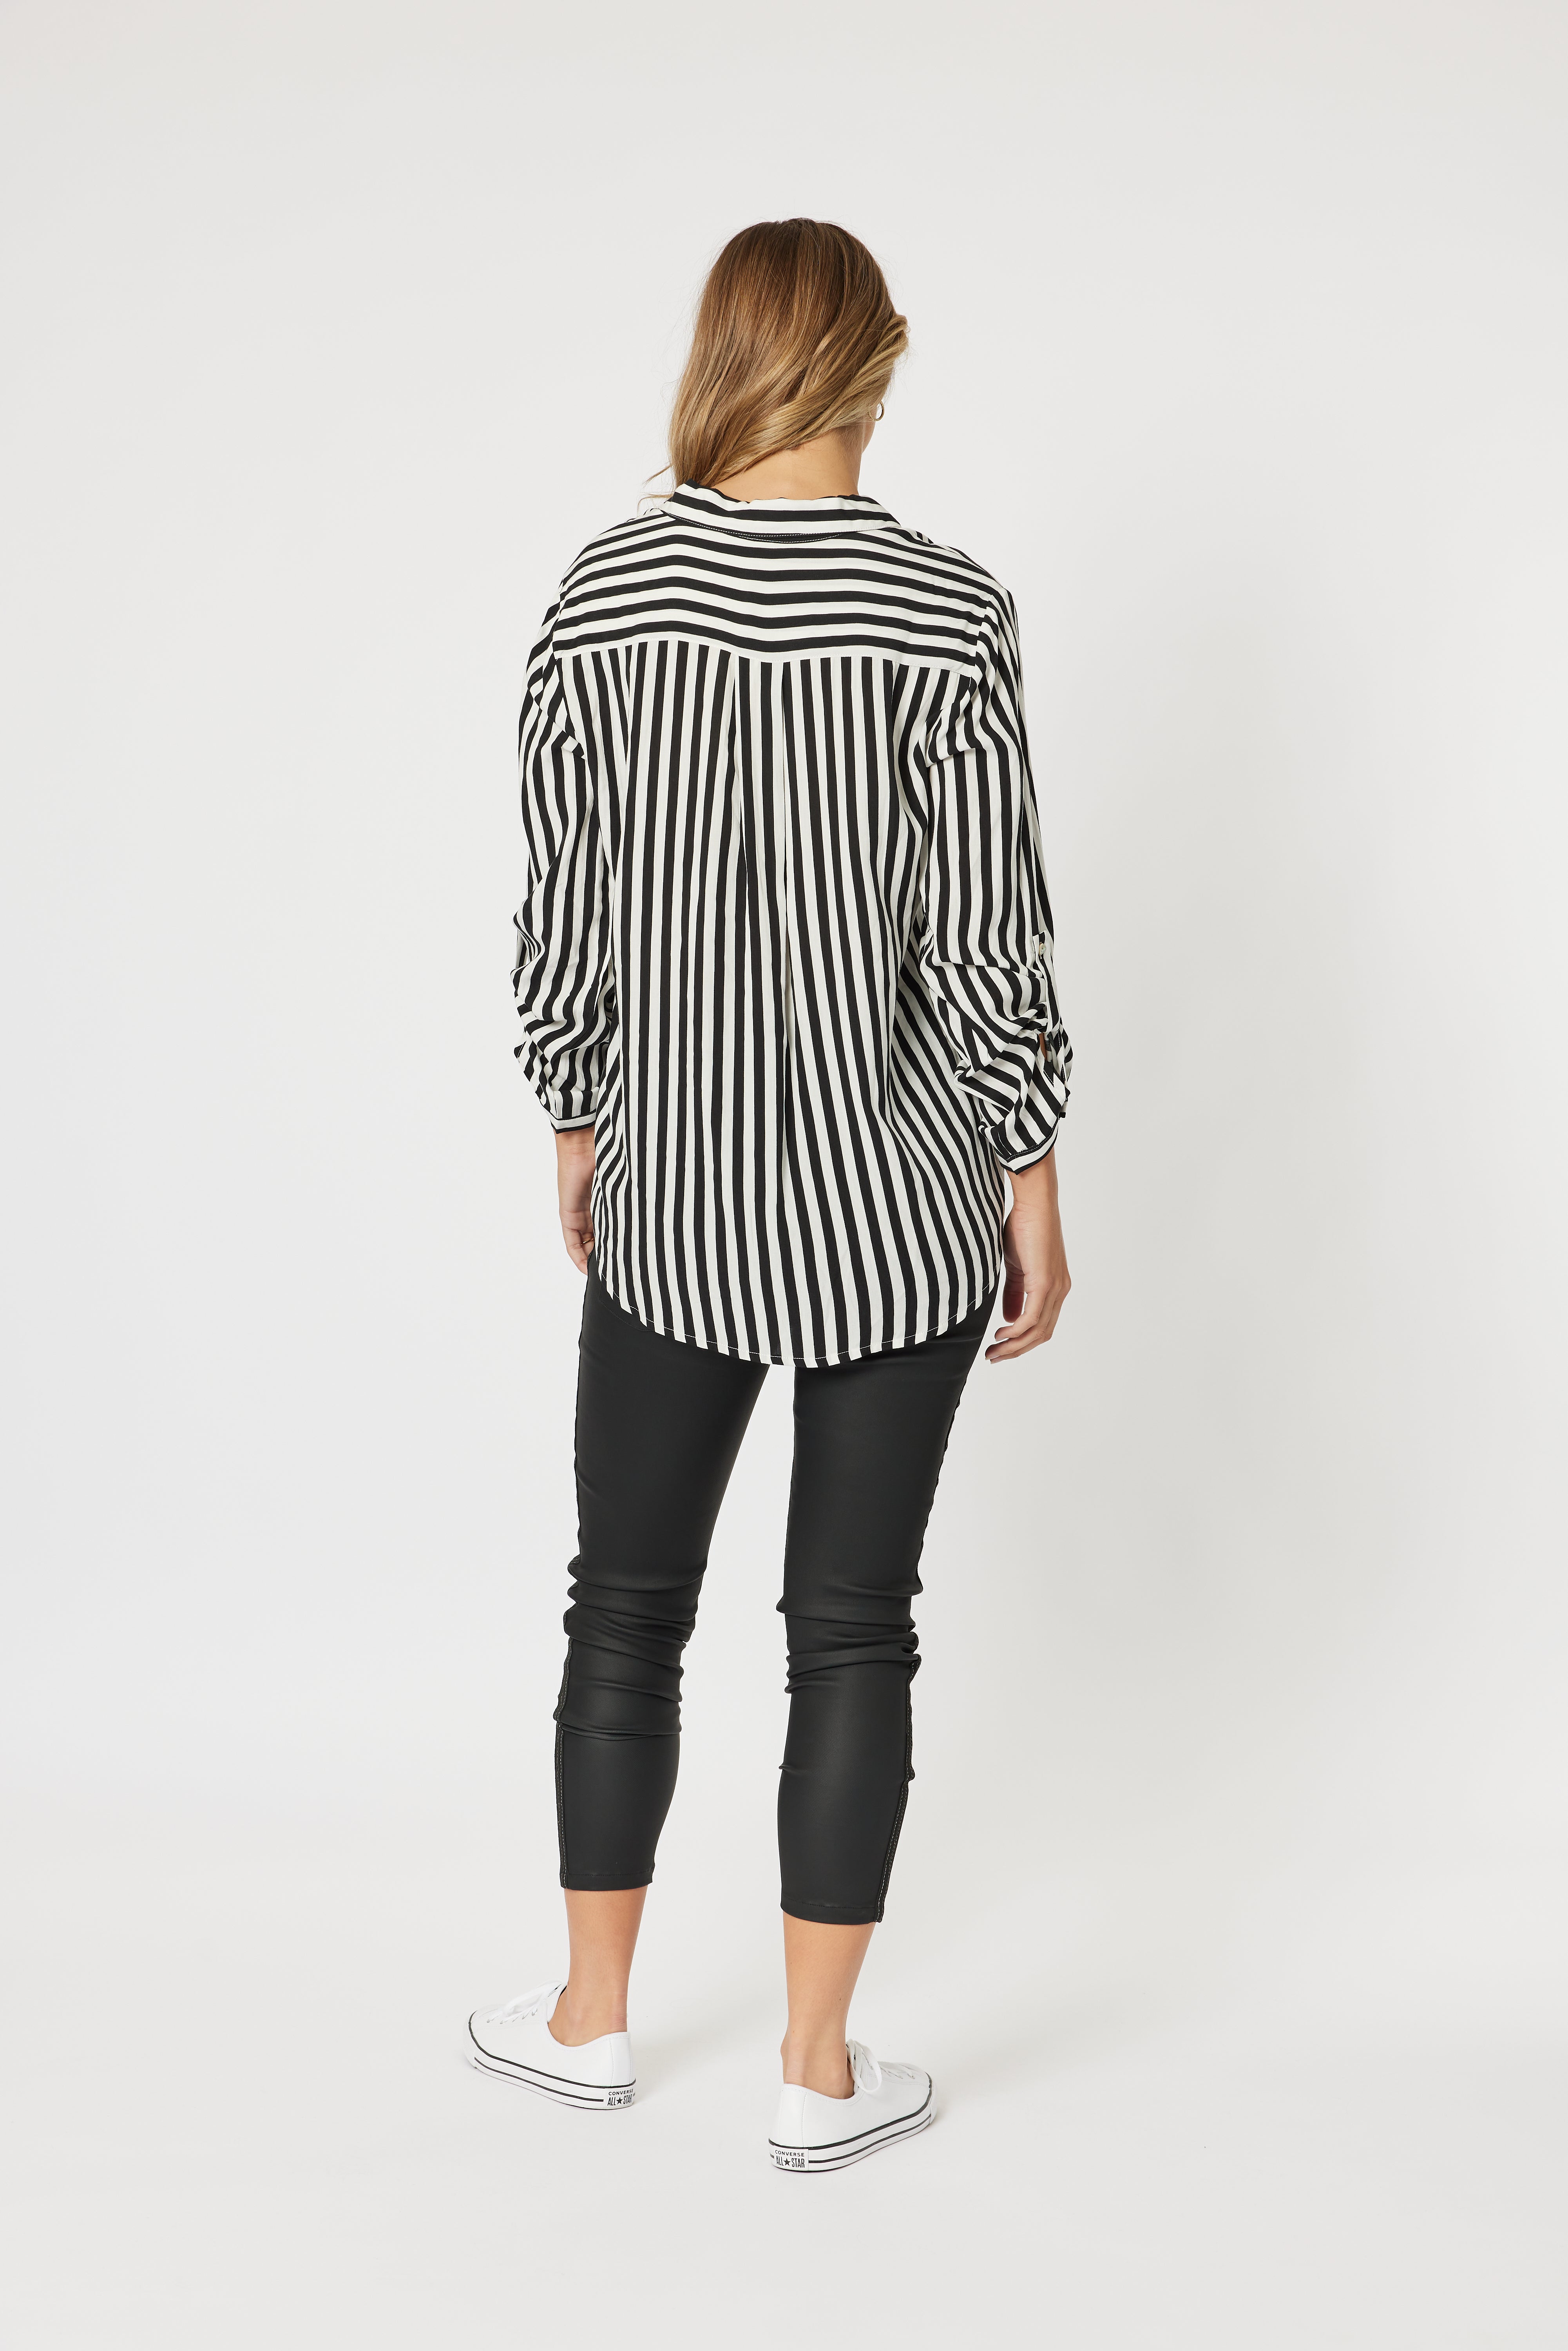 Threadz Tina Stripe Shirt - Black/White